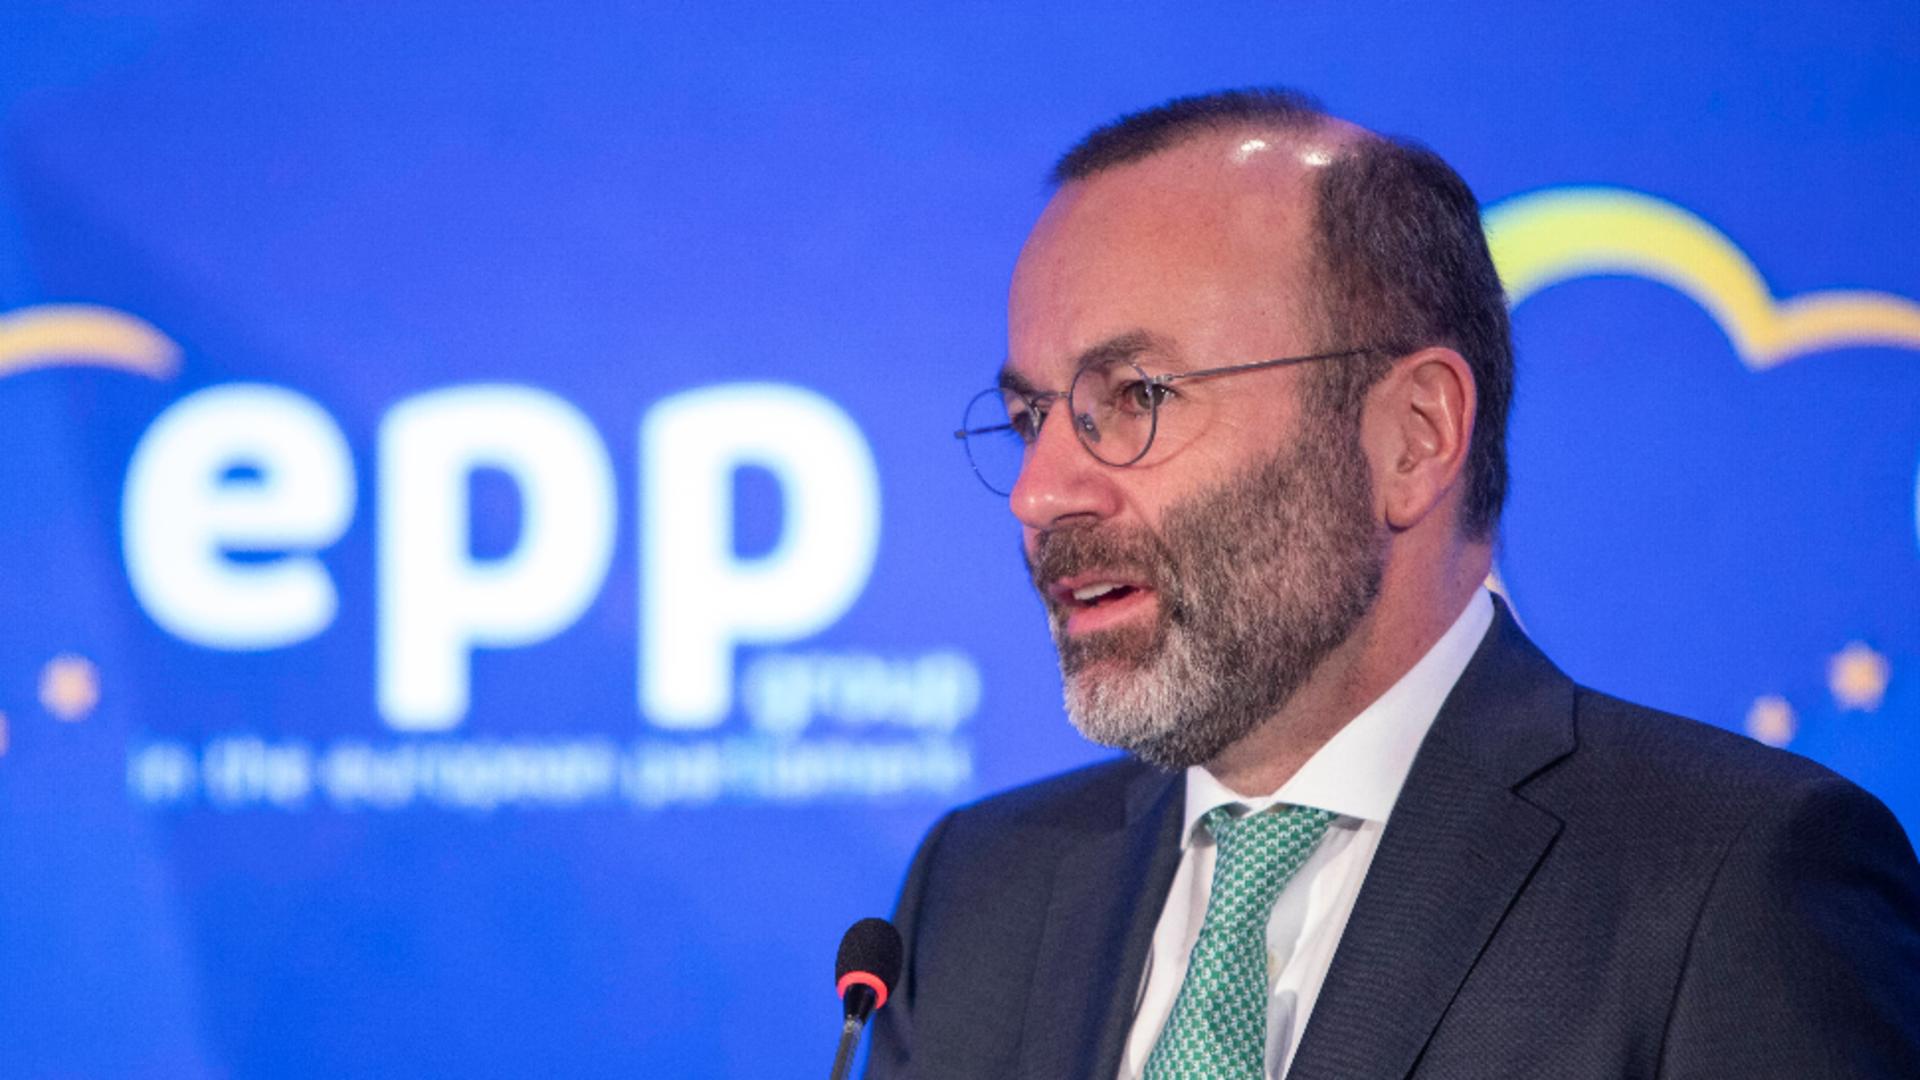 Președintele PPE, Manfred Weber: “În momentul în care Nicolae Ciucă a fost premier creşterea economică a fost impresionantă”.